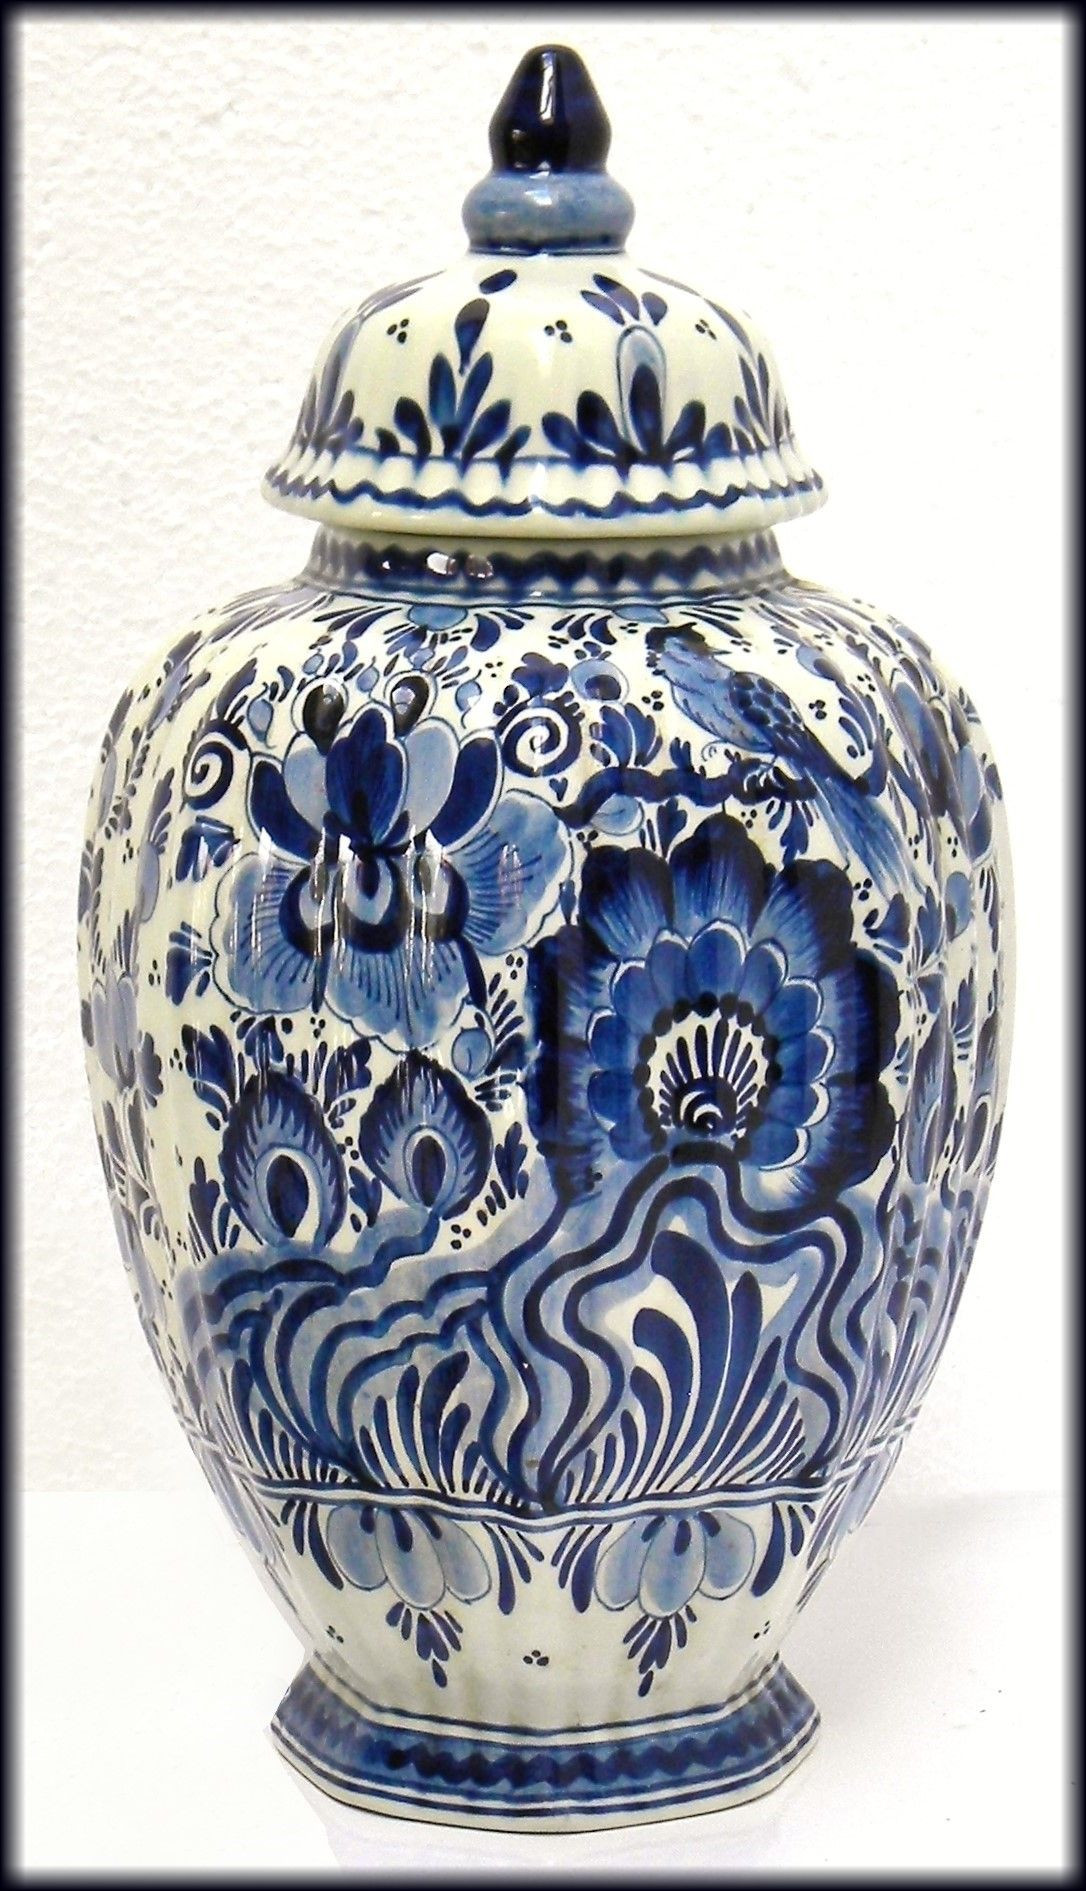 16 Unique Blue Floral Vase 2024 free download blue floral vase of vintage delft blue ceramic vase jar hand painted cobalt blue floral inside amazing delft blue vintage dutch art pottery with cobalt blue bird and floral decoration